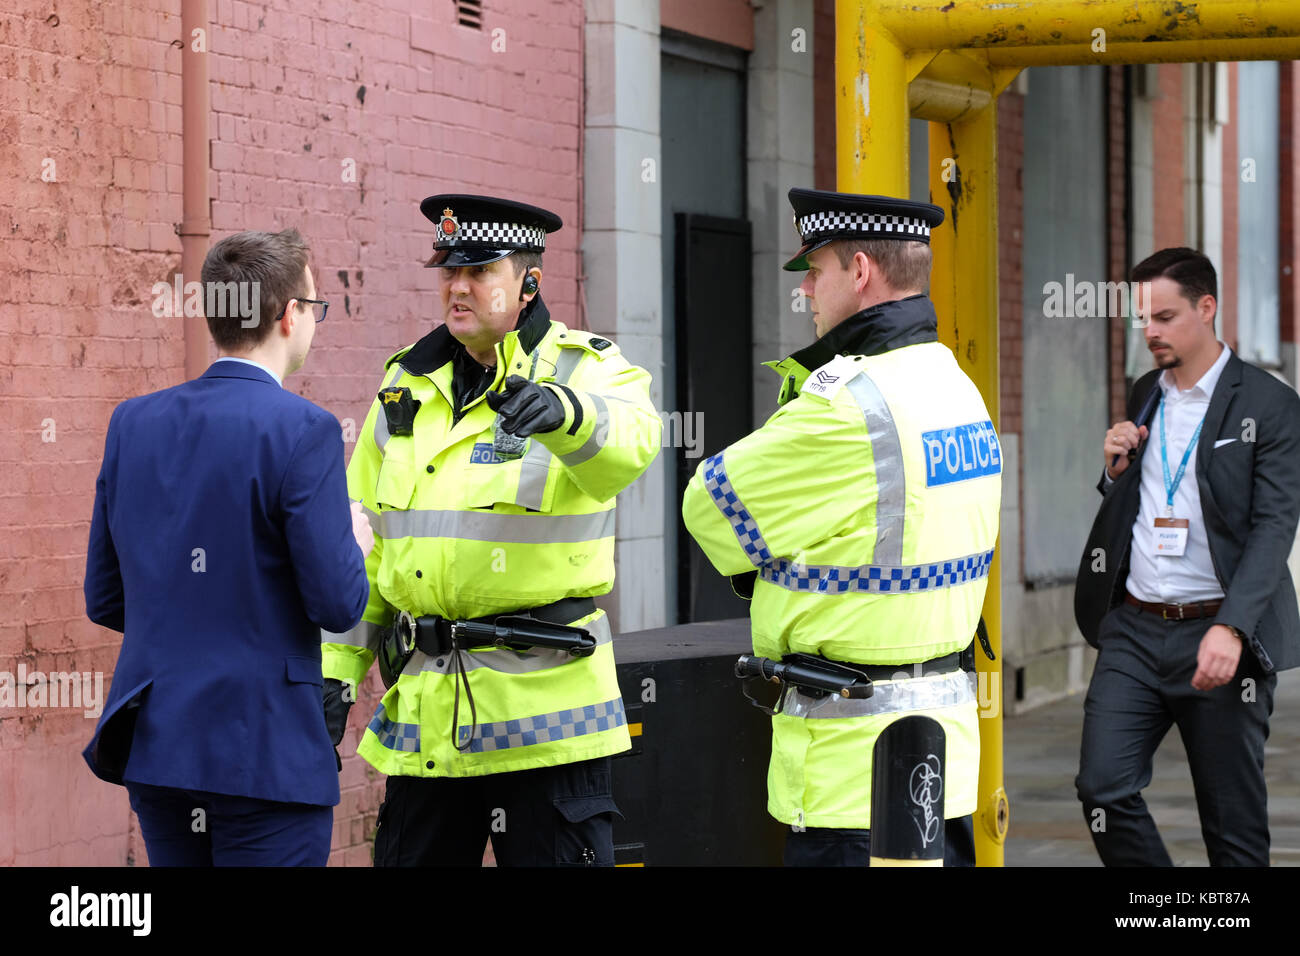 Manchester UK, Sonntag, 1. Oktober 2017 - Ein Abgeordneter der Konservativen Partei bittet einen der vielen Polizisten, die am Eröffnungstag der Konferenz der Konservativen Partei in der Stadt eingesetzt wurden, um Anweisungen. Steven May / Alamy Live News Stockfoto